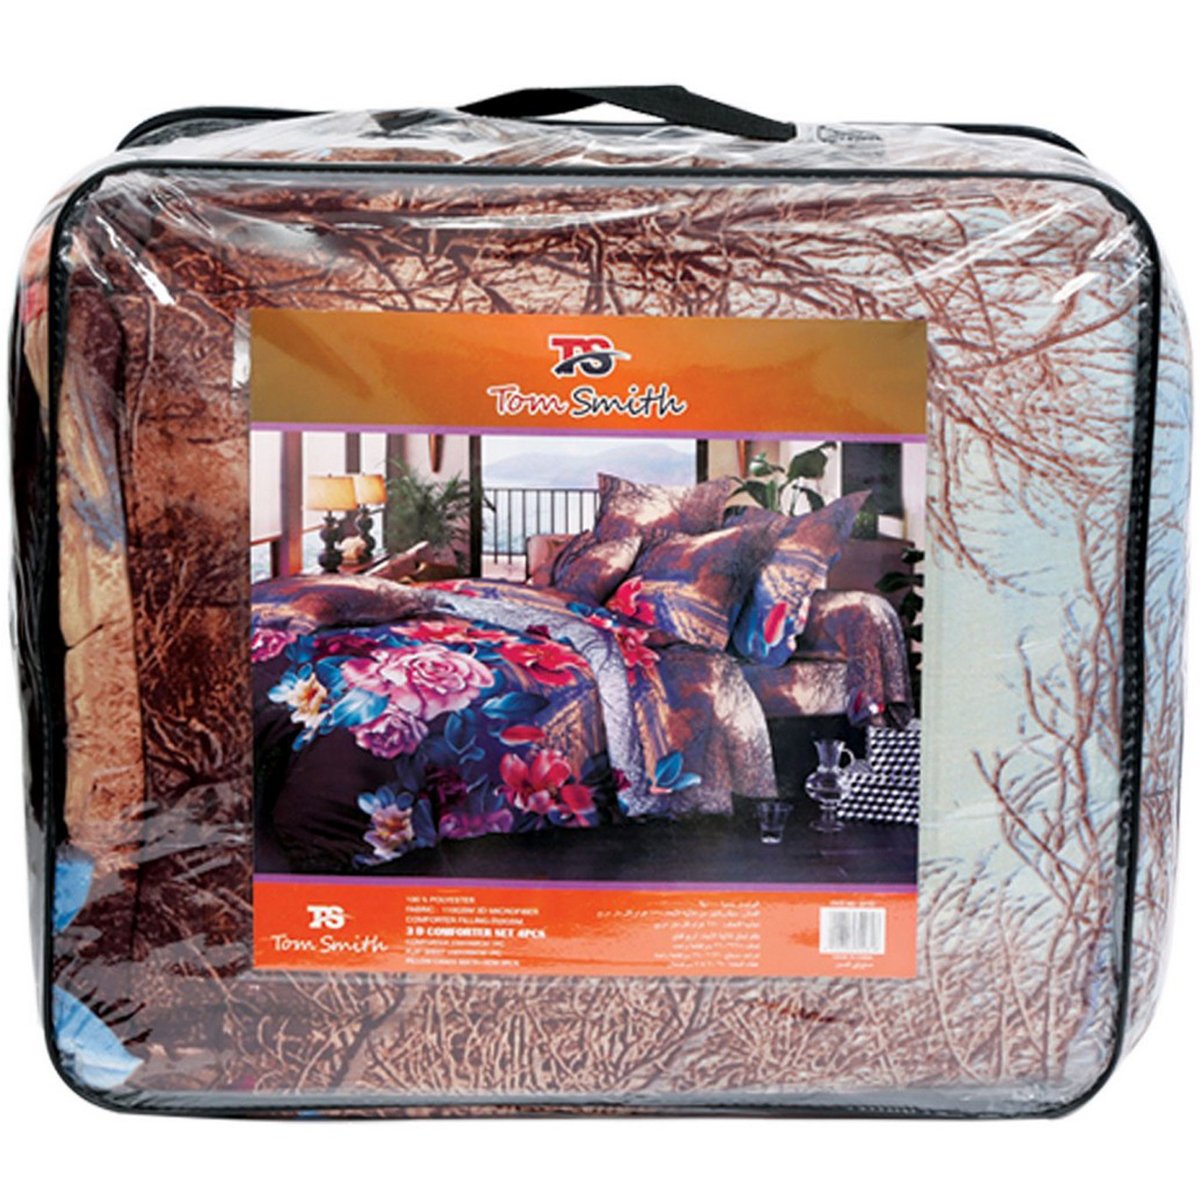 Tom Smith 3D Comforter Set 4pcs 228x260cm Double Assorted Colors & Designs